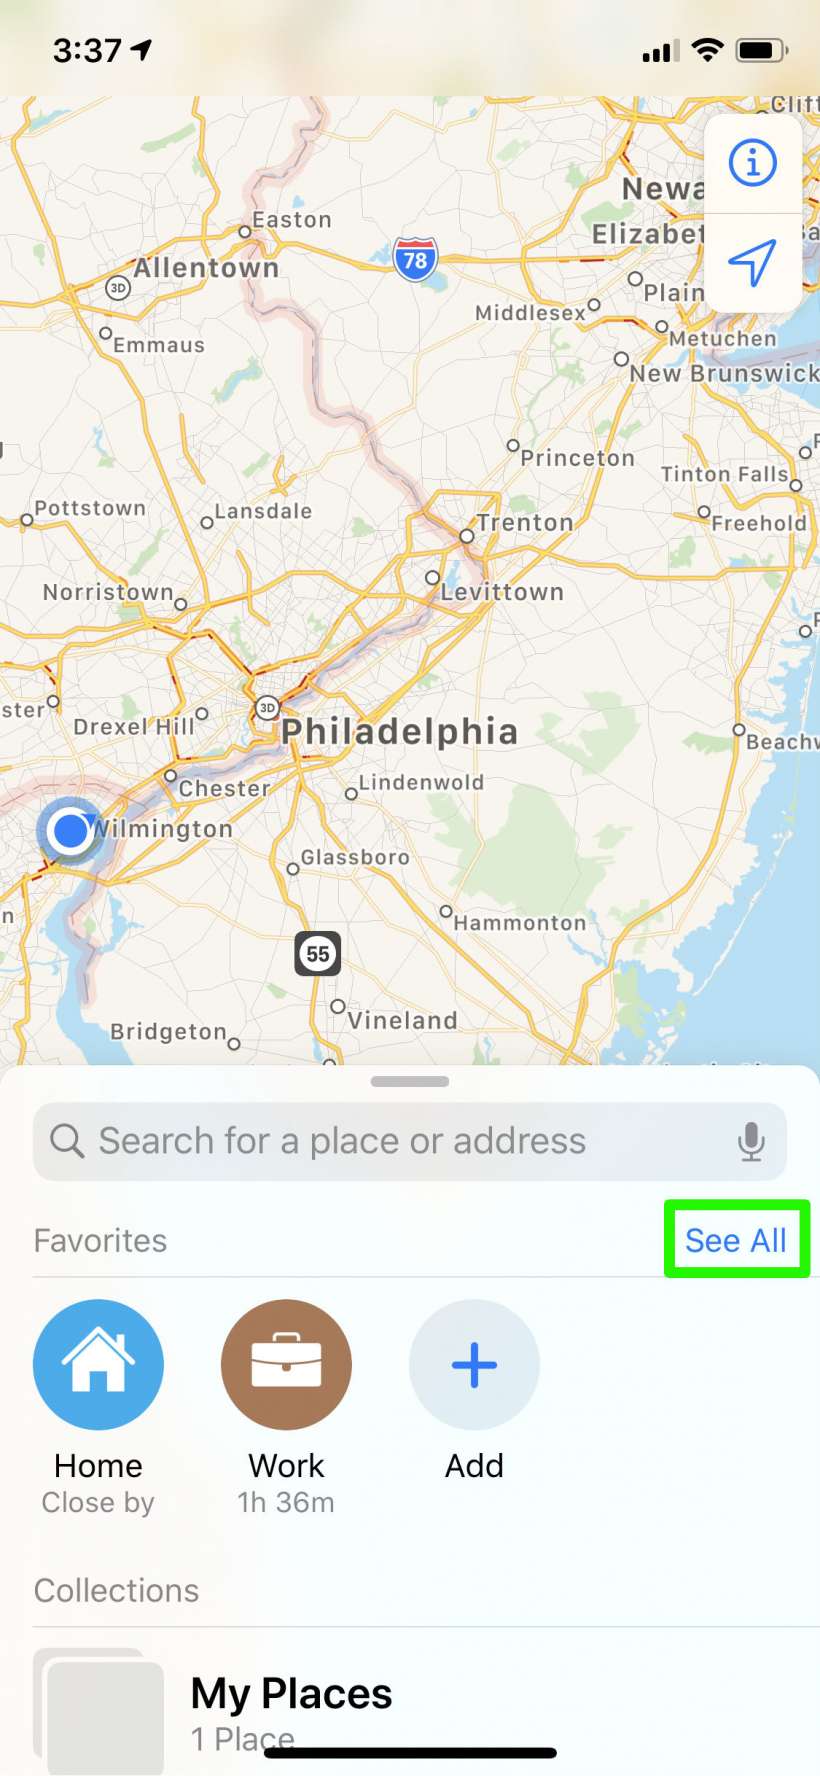 Cara membagikan ETA Anda secara otomatis dari Maps di iPhone dan iPad.